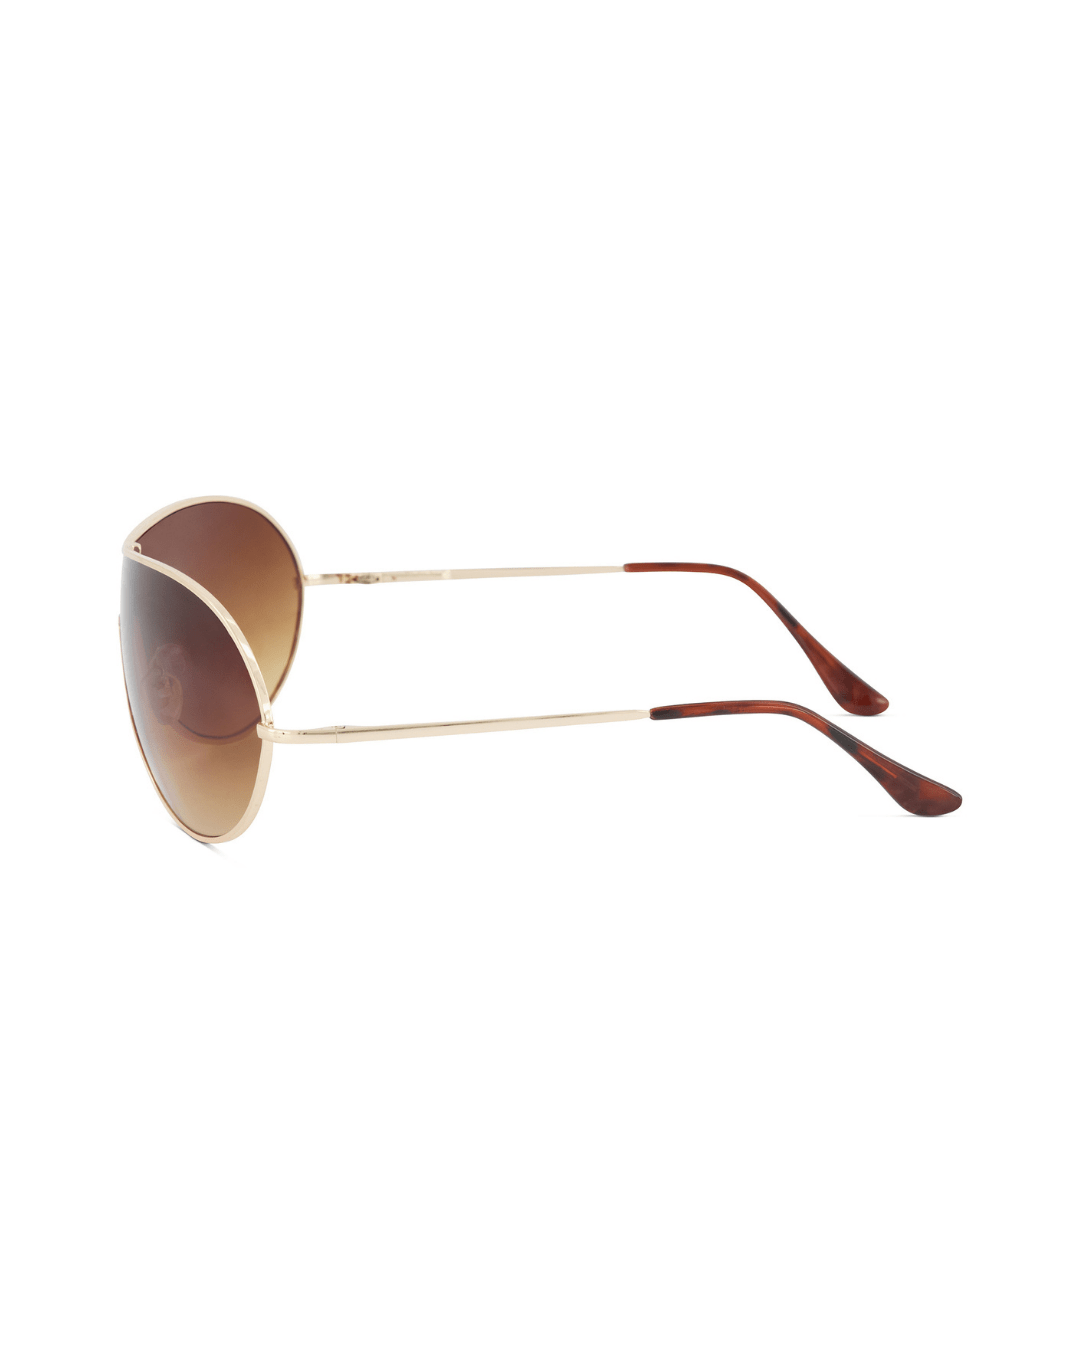 Gold Rim Aviator Sunglasses - American Deadstock